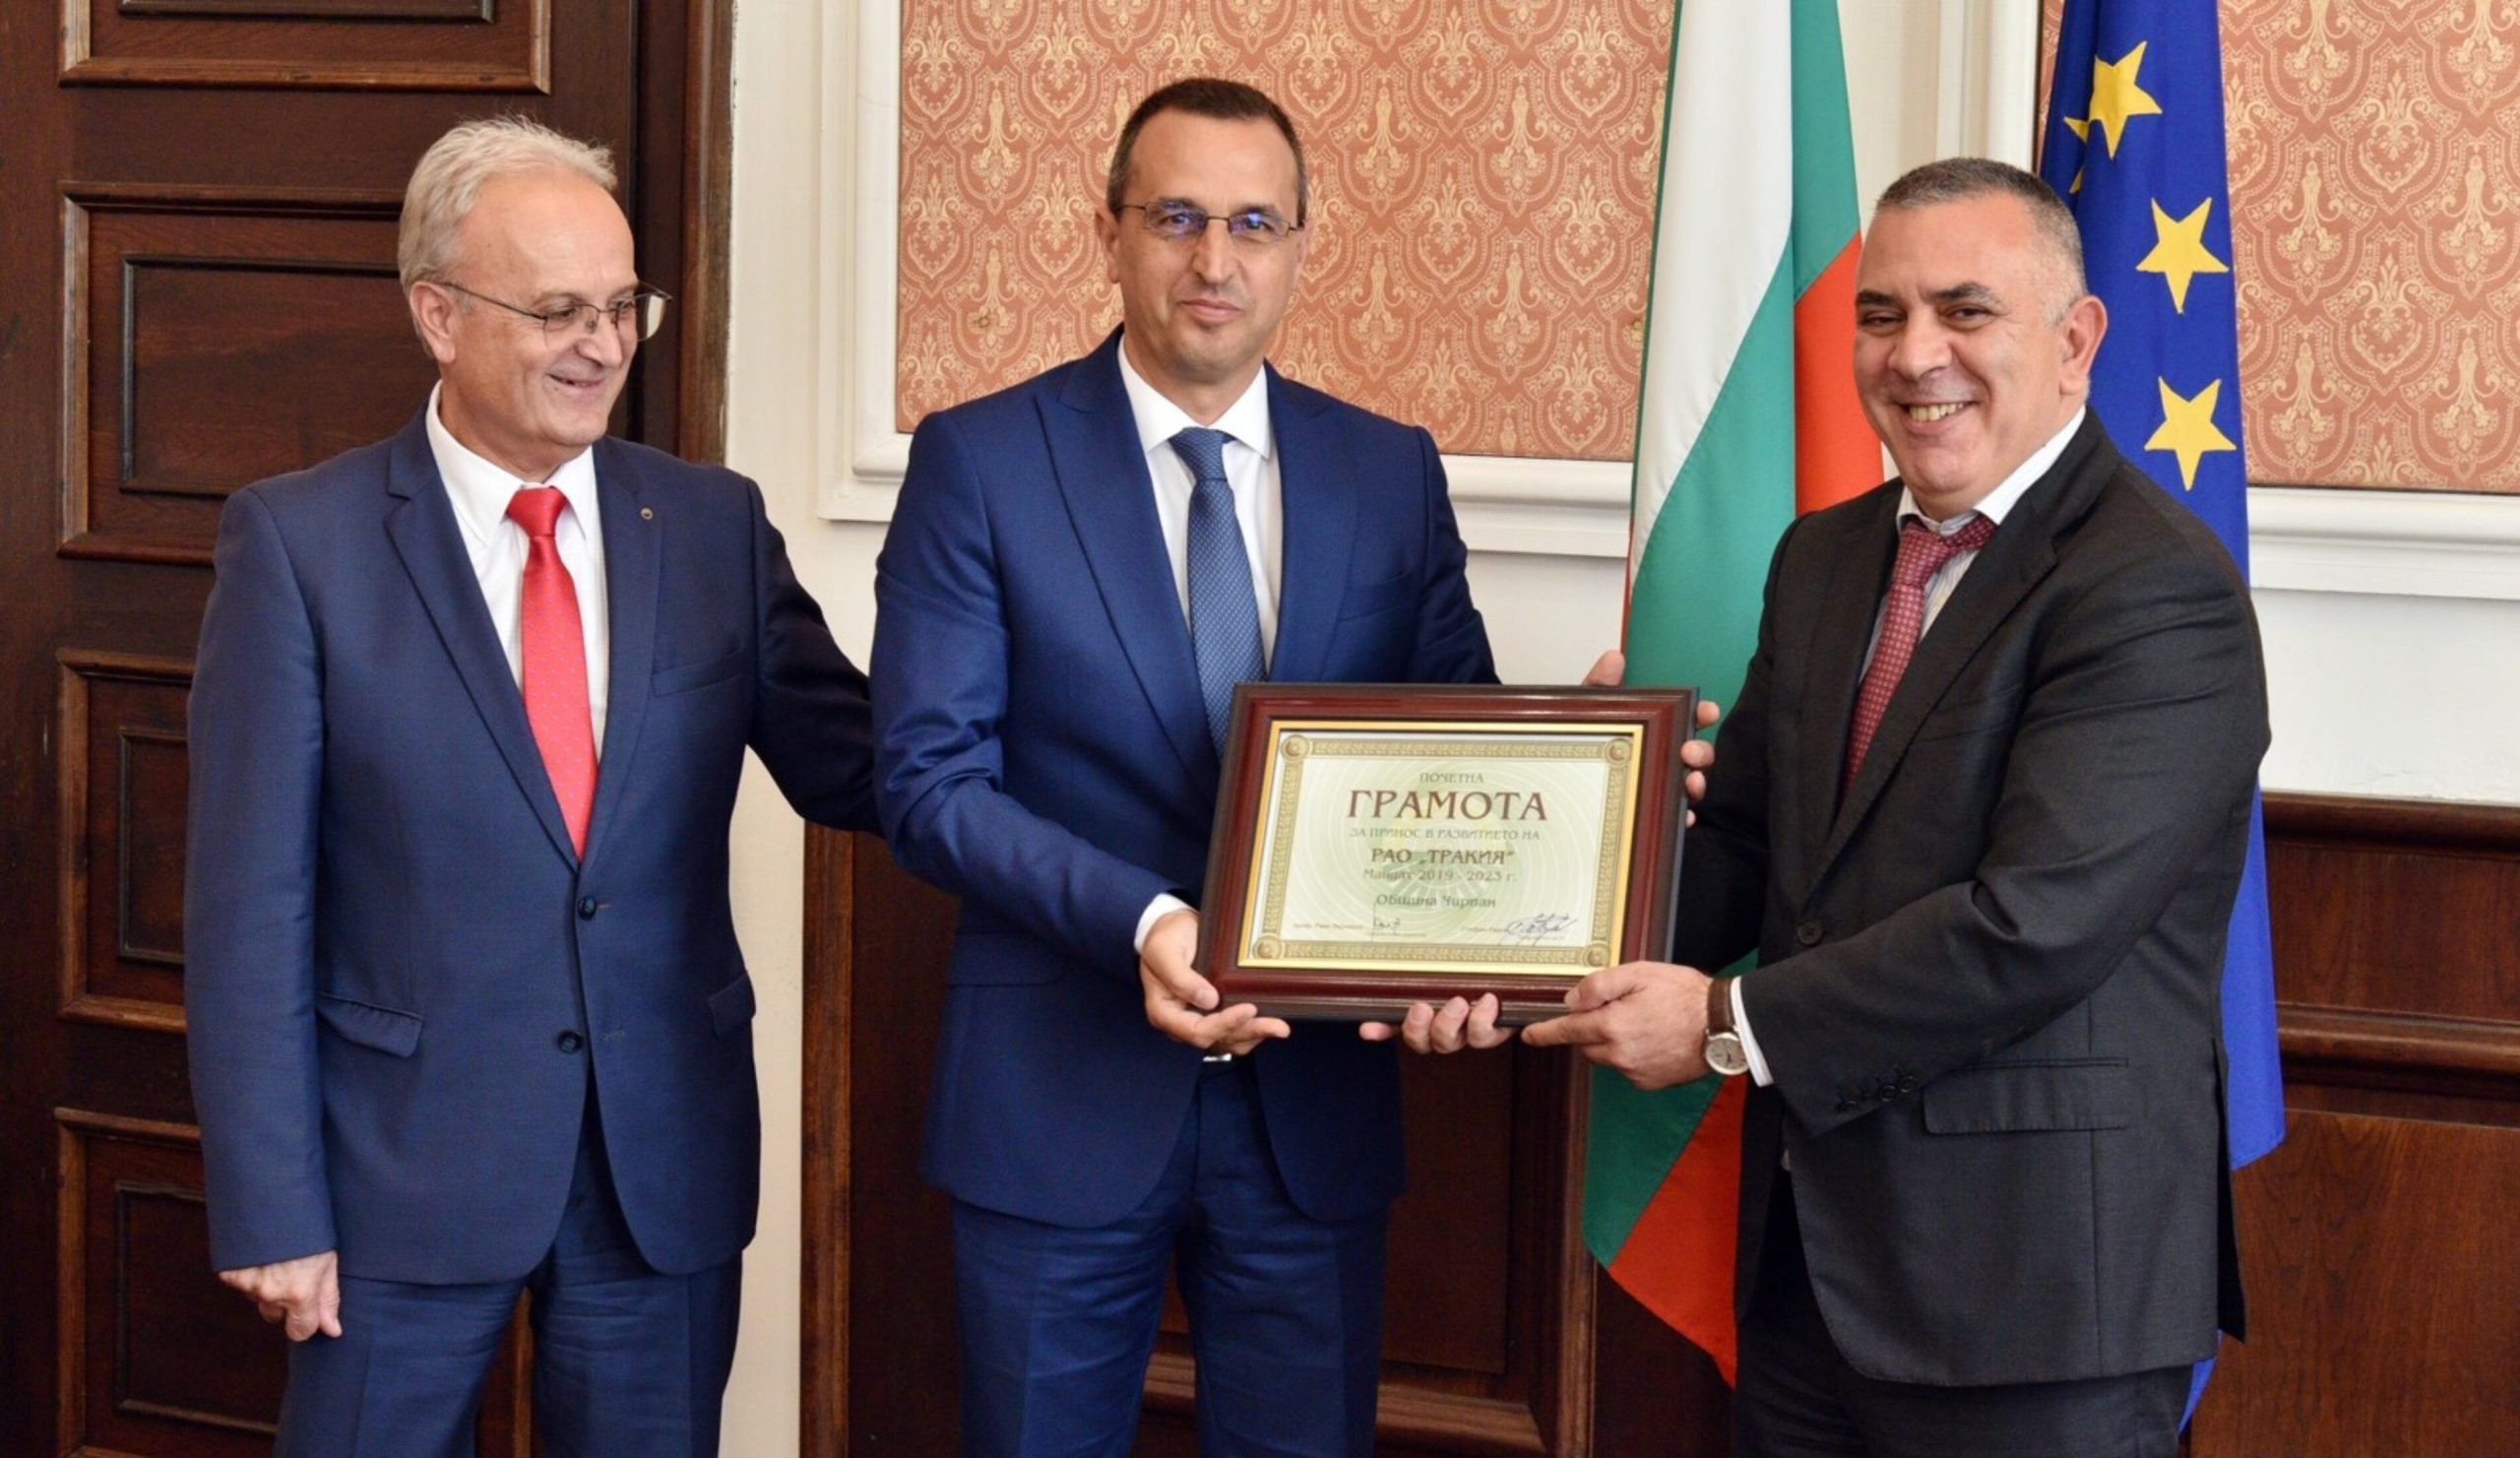 Кметът Стефан Радев получи всеобщо признание и благодарност за ползотворната